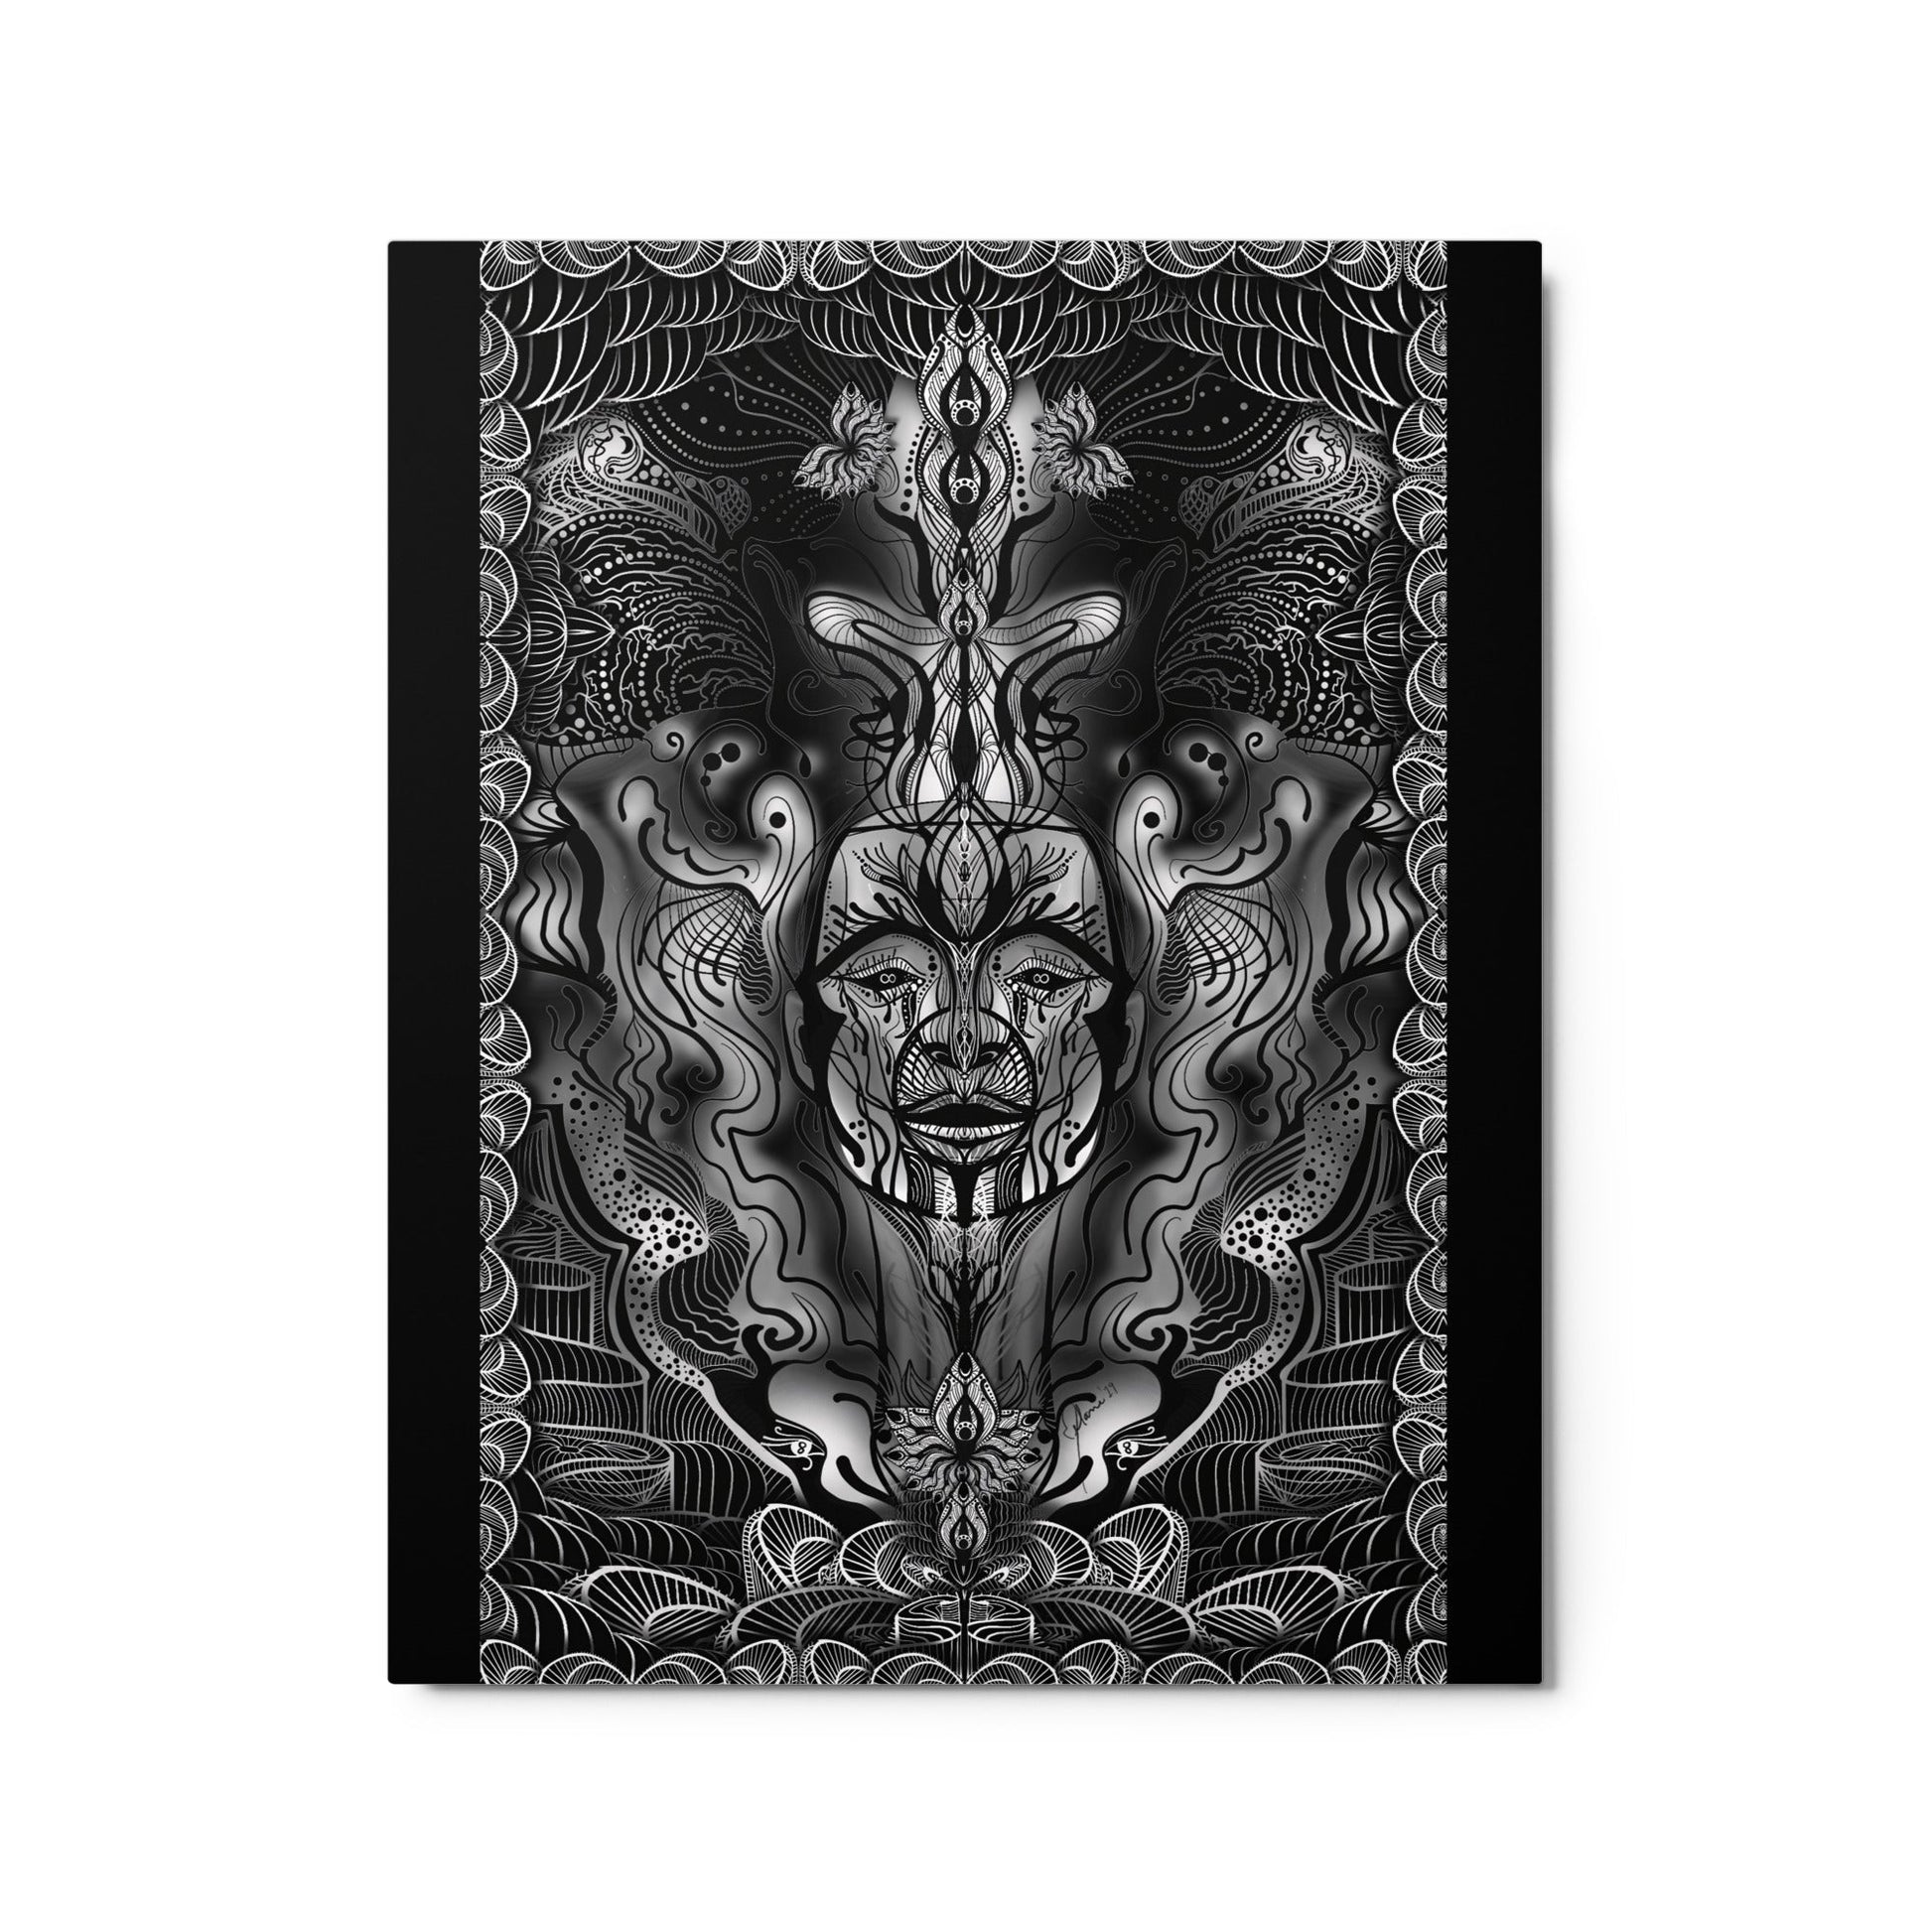 Dark Matter Download - Metal print - 1111Arts